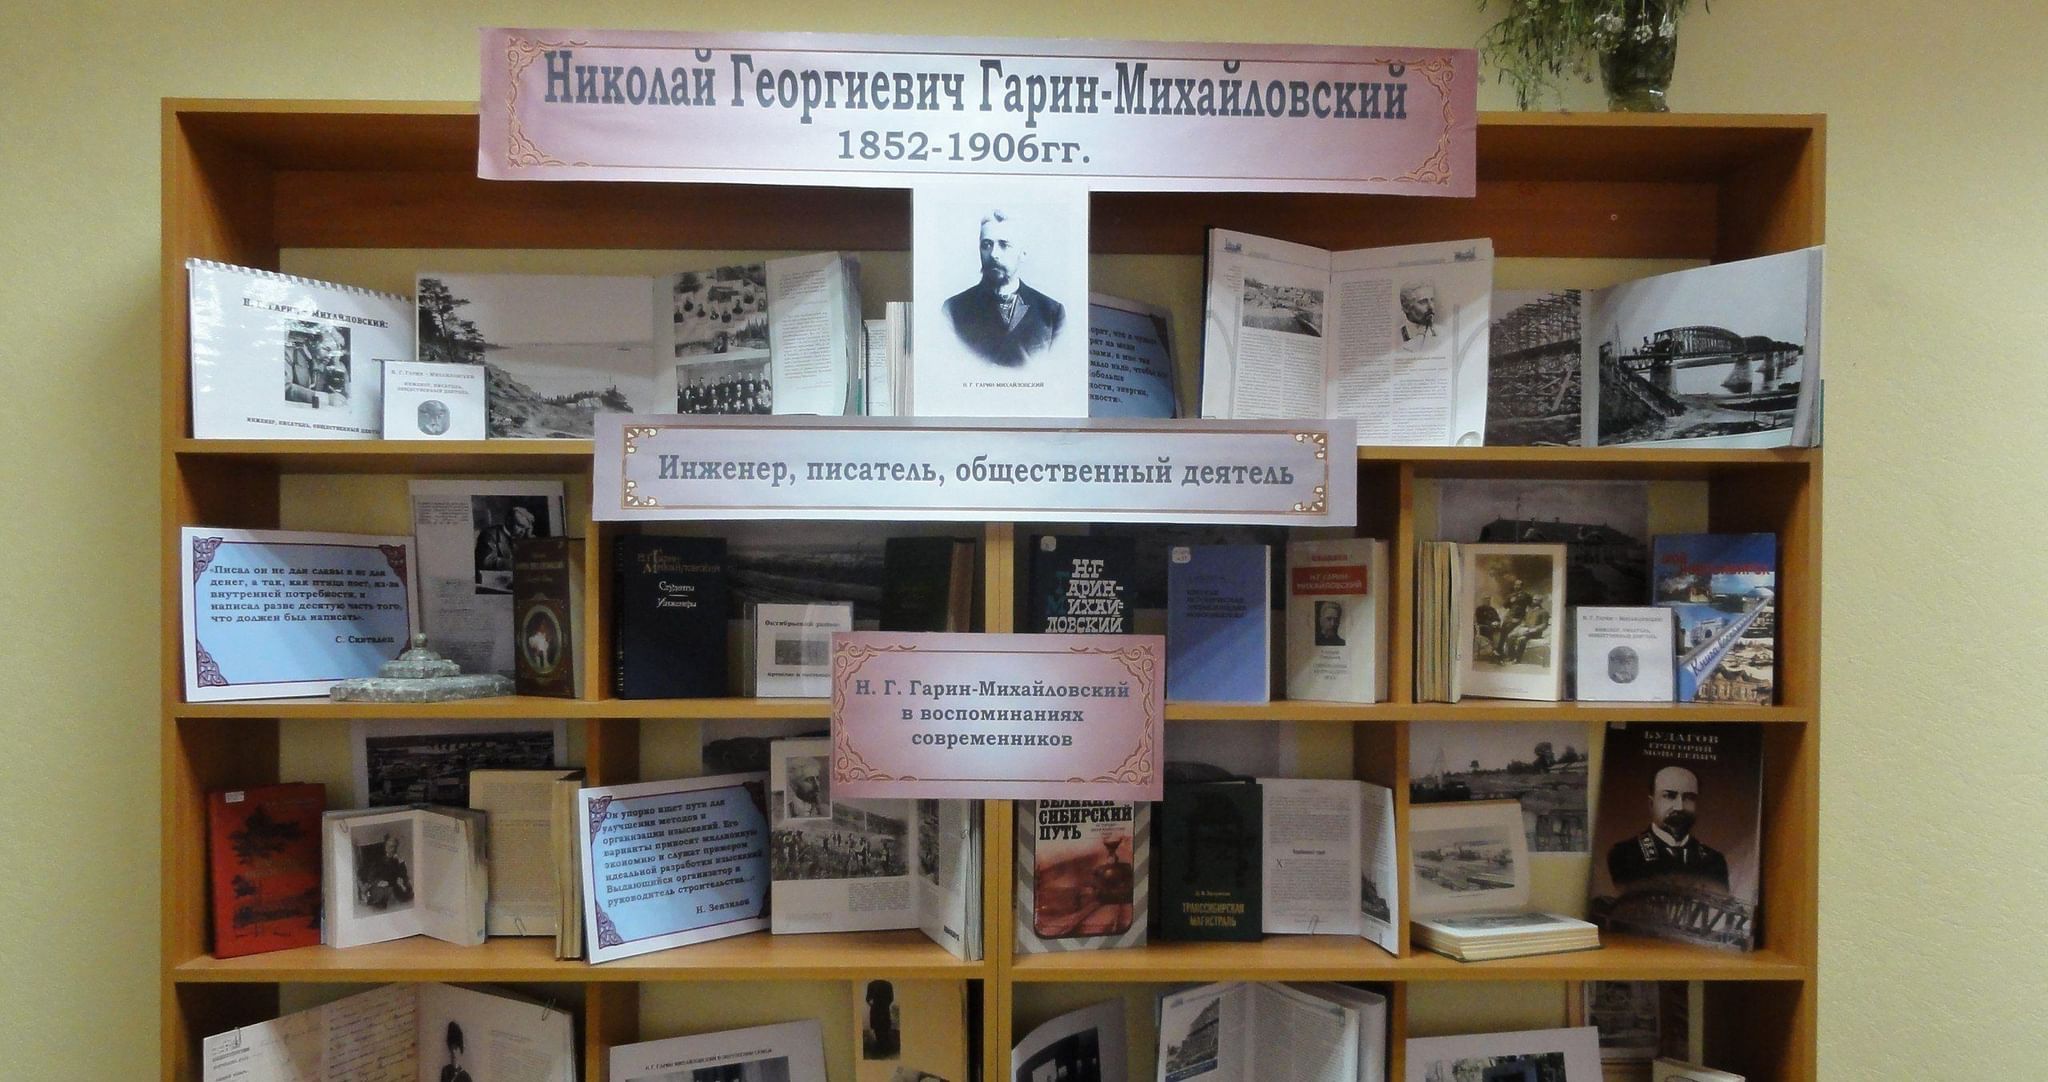 Гарин-Михайловский книжная выставка в библиотеке